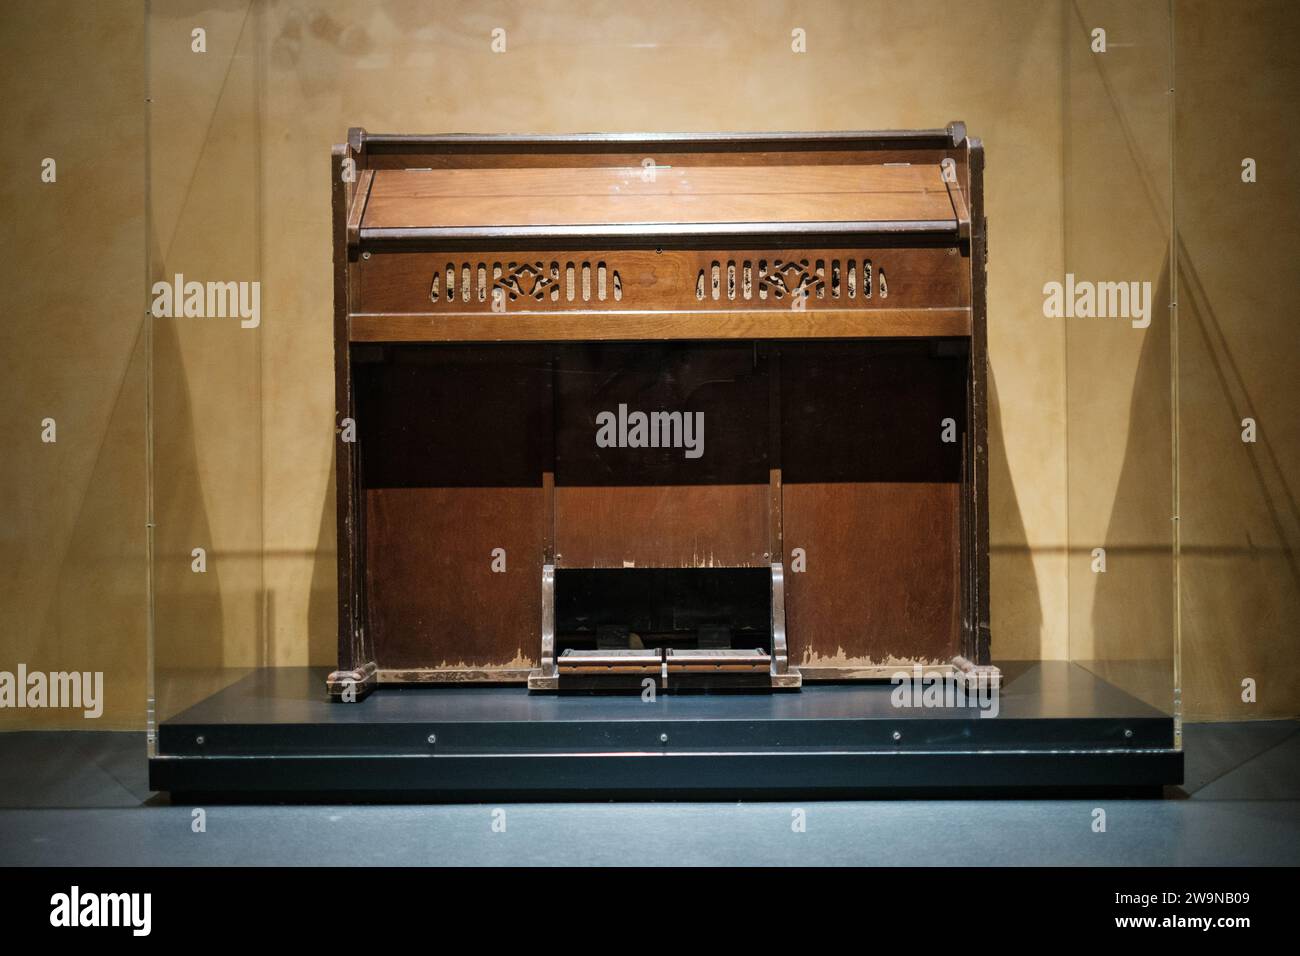 Mostra di pianoforte vintage al museo Foto Stock